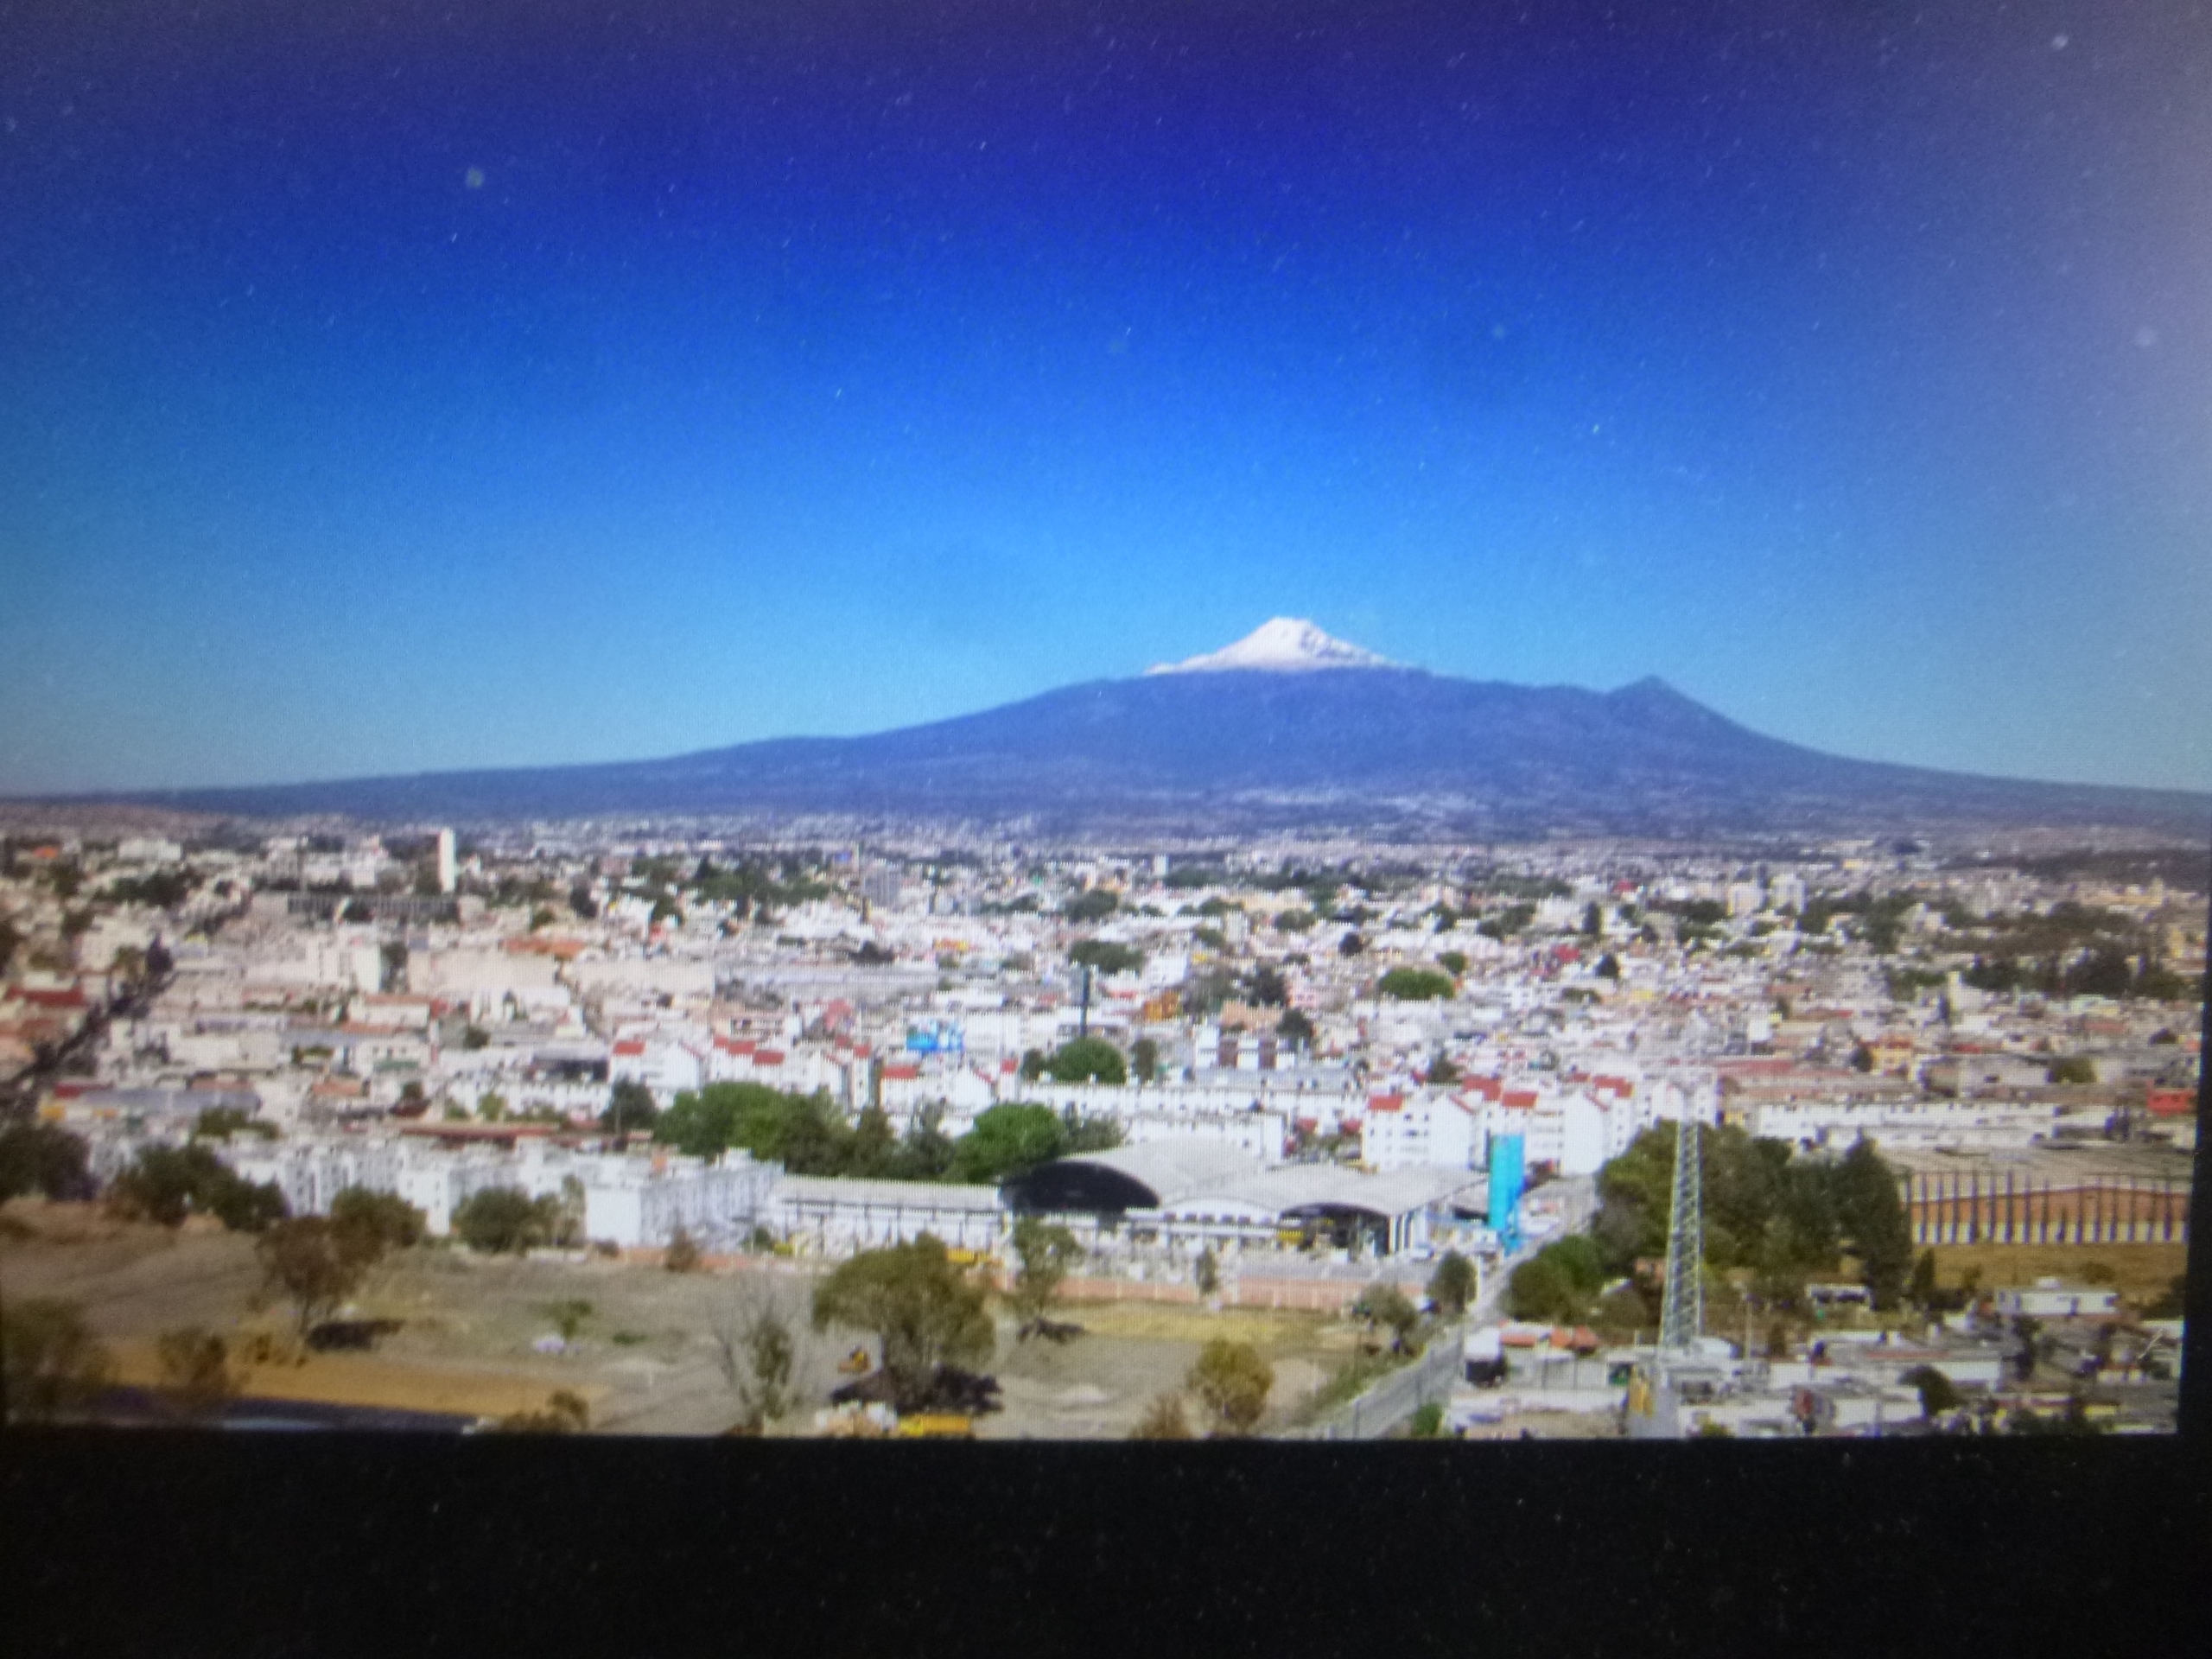 El mayor reto a futuro de la Ciudad de Puebla y la zona metropolitana es resolver el problema del agua